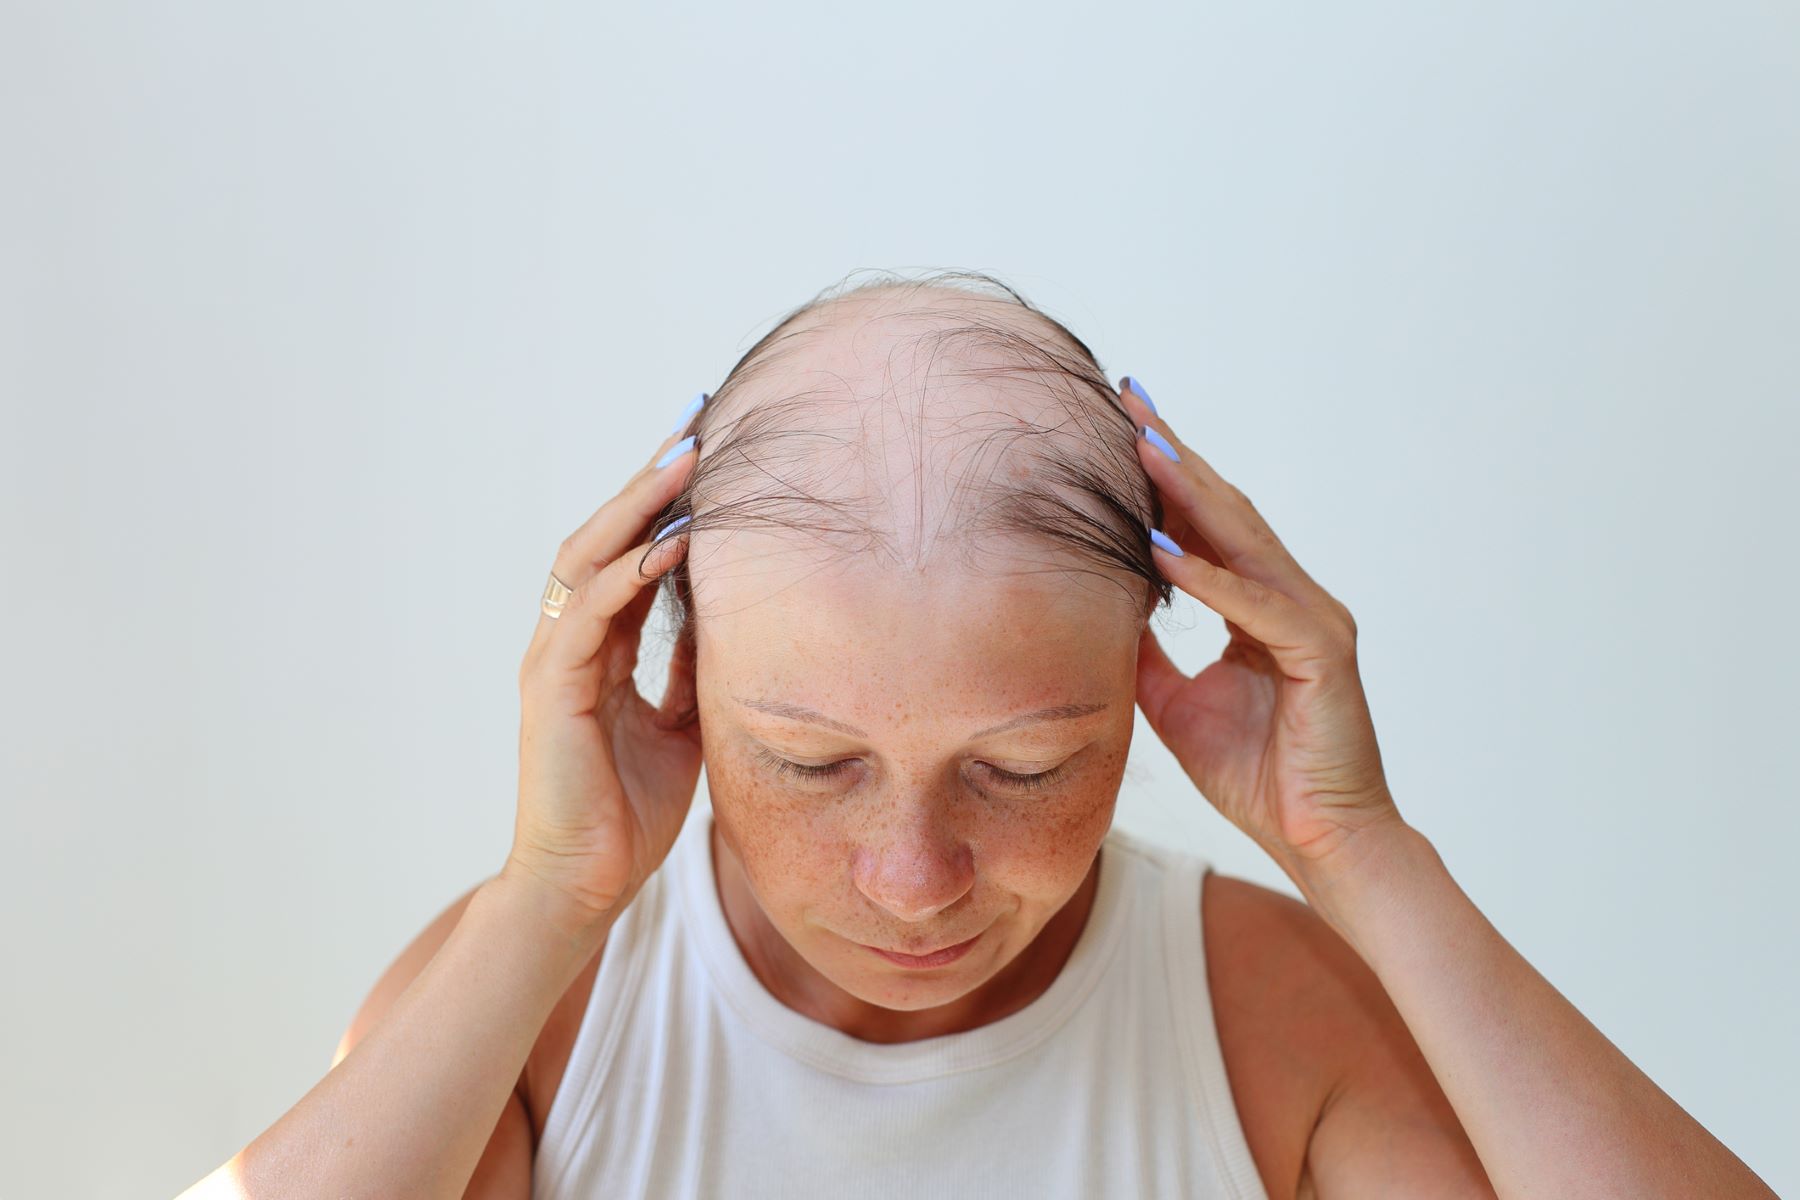 Medication-induced hair loss